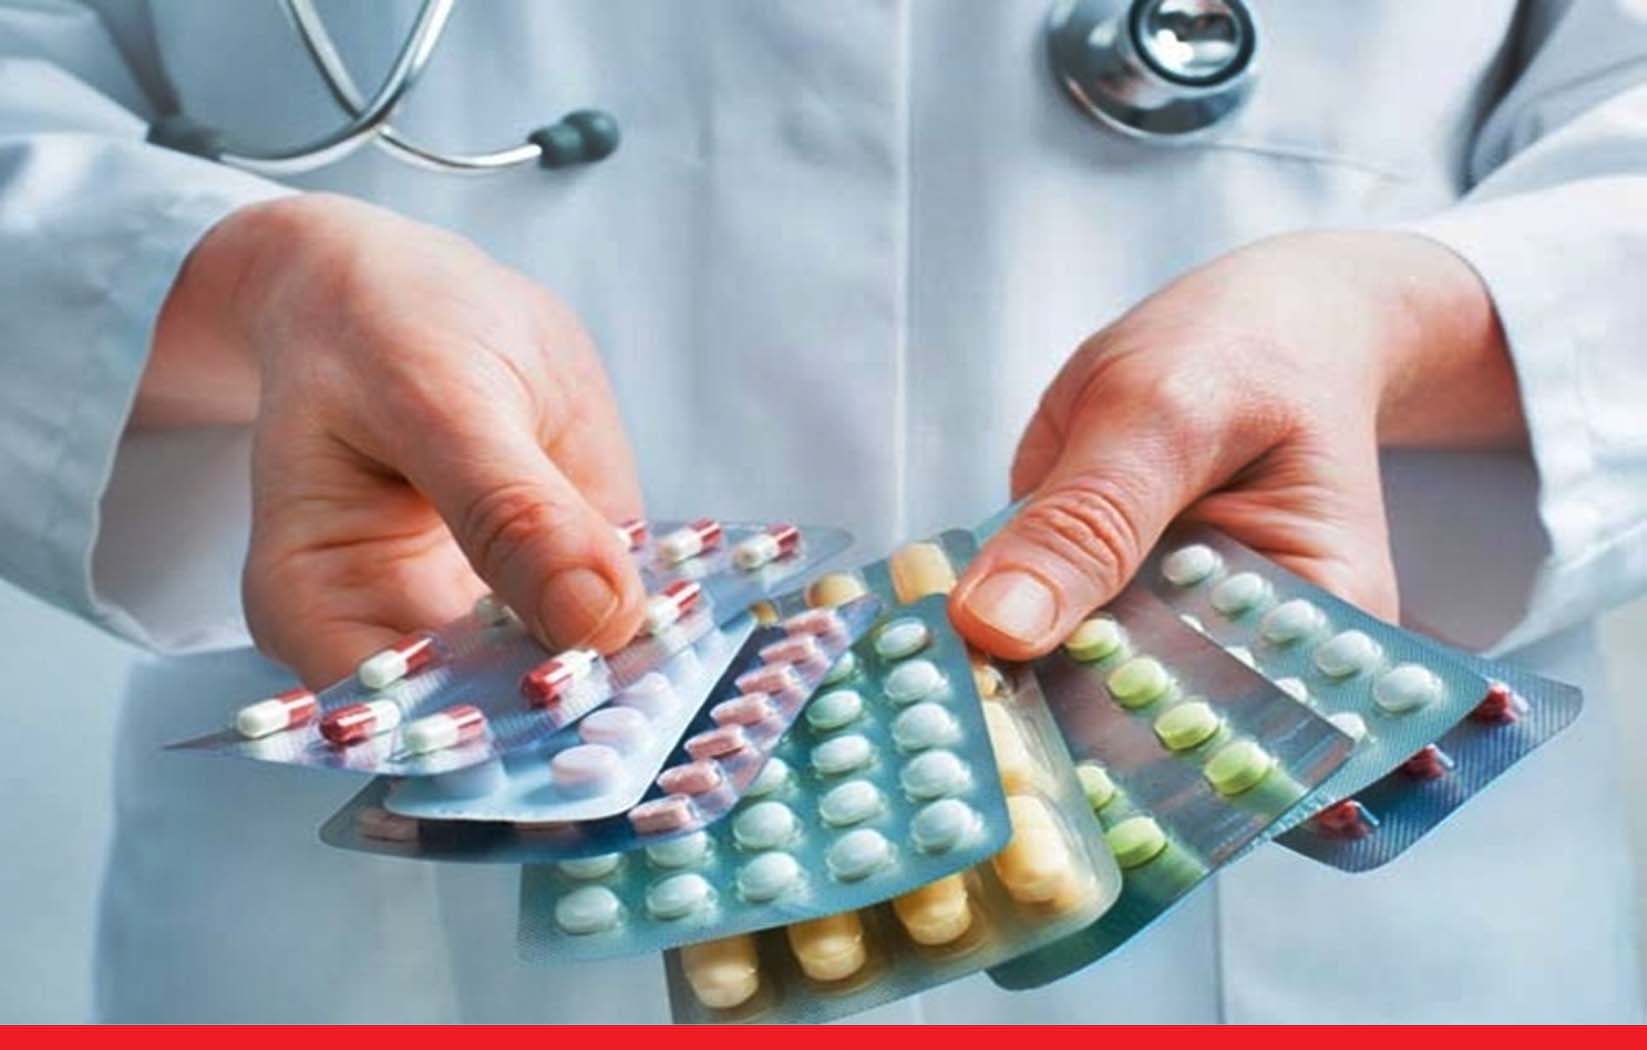 महंगाई का झटका: 1 अप्रैल से पैरासिटामोल समेत 900 दवाओं के दाम 12 प्रतिशत तक बढ़ेंगे